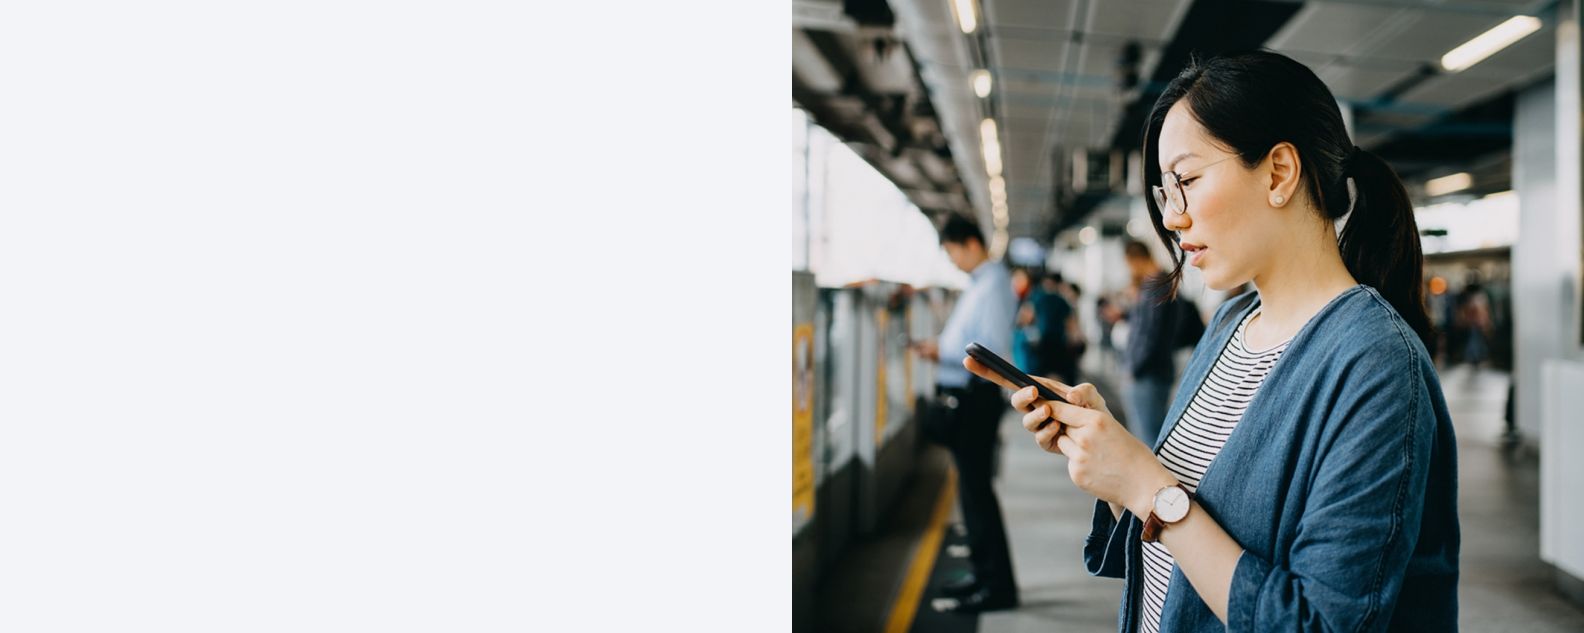 Mulher jovem usando telefone celular na plataforma da estação de metrô